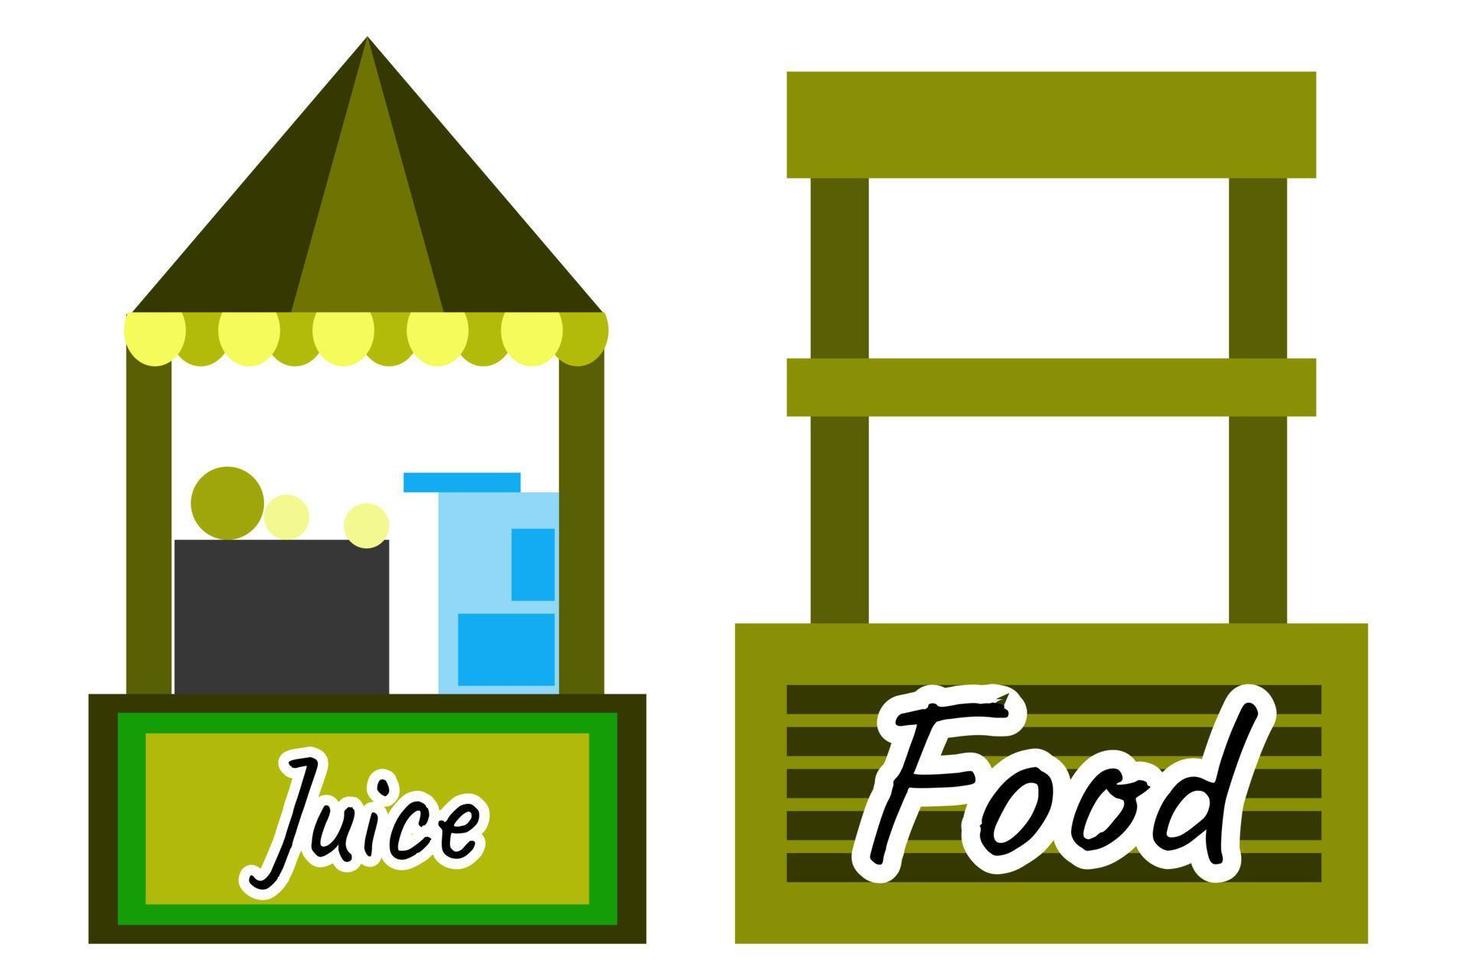 hus för försäljning juice och mat vektor